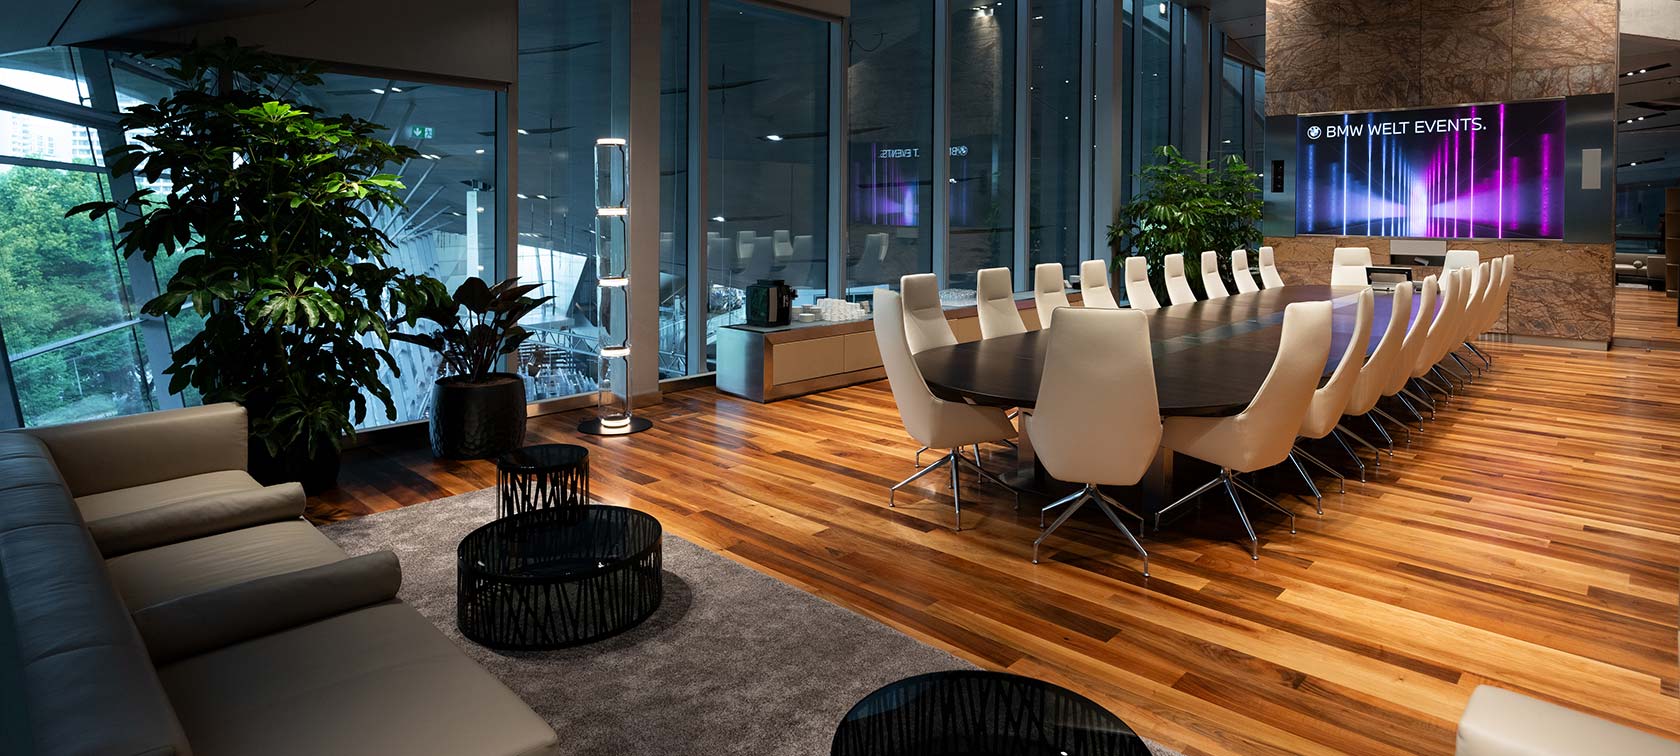 Konferenzraum mit großem Tisch und Bestuhlung im Business Club mit Ausblick über die BMW Welt